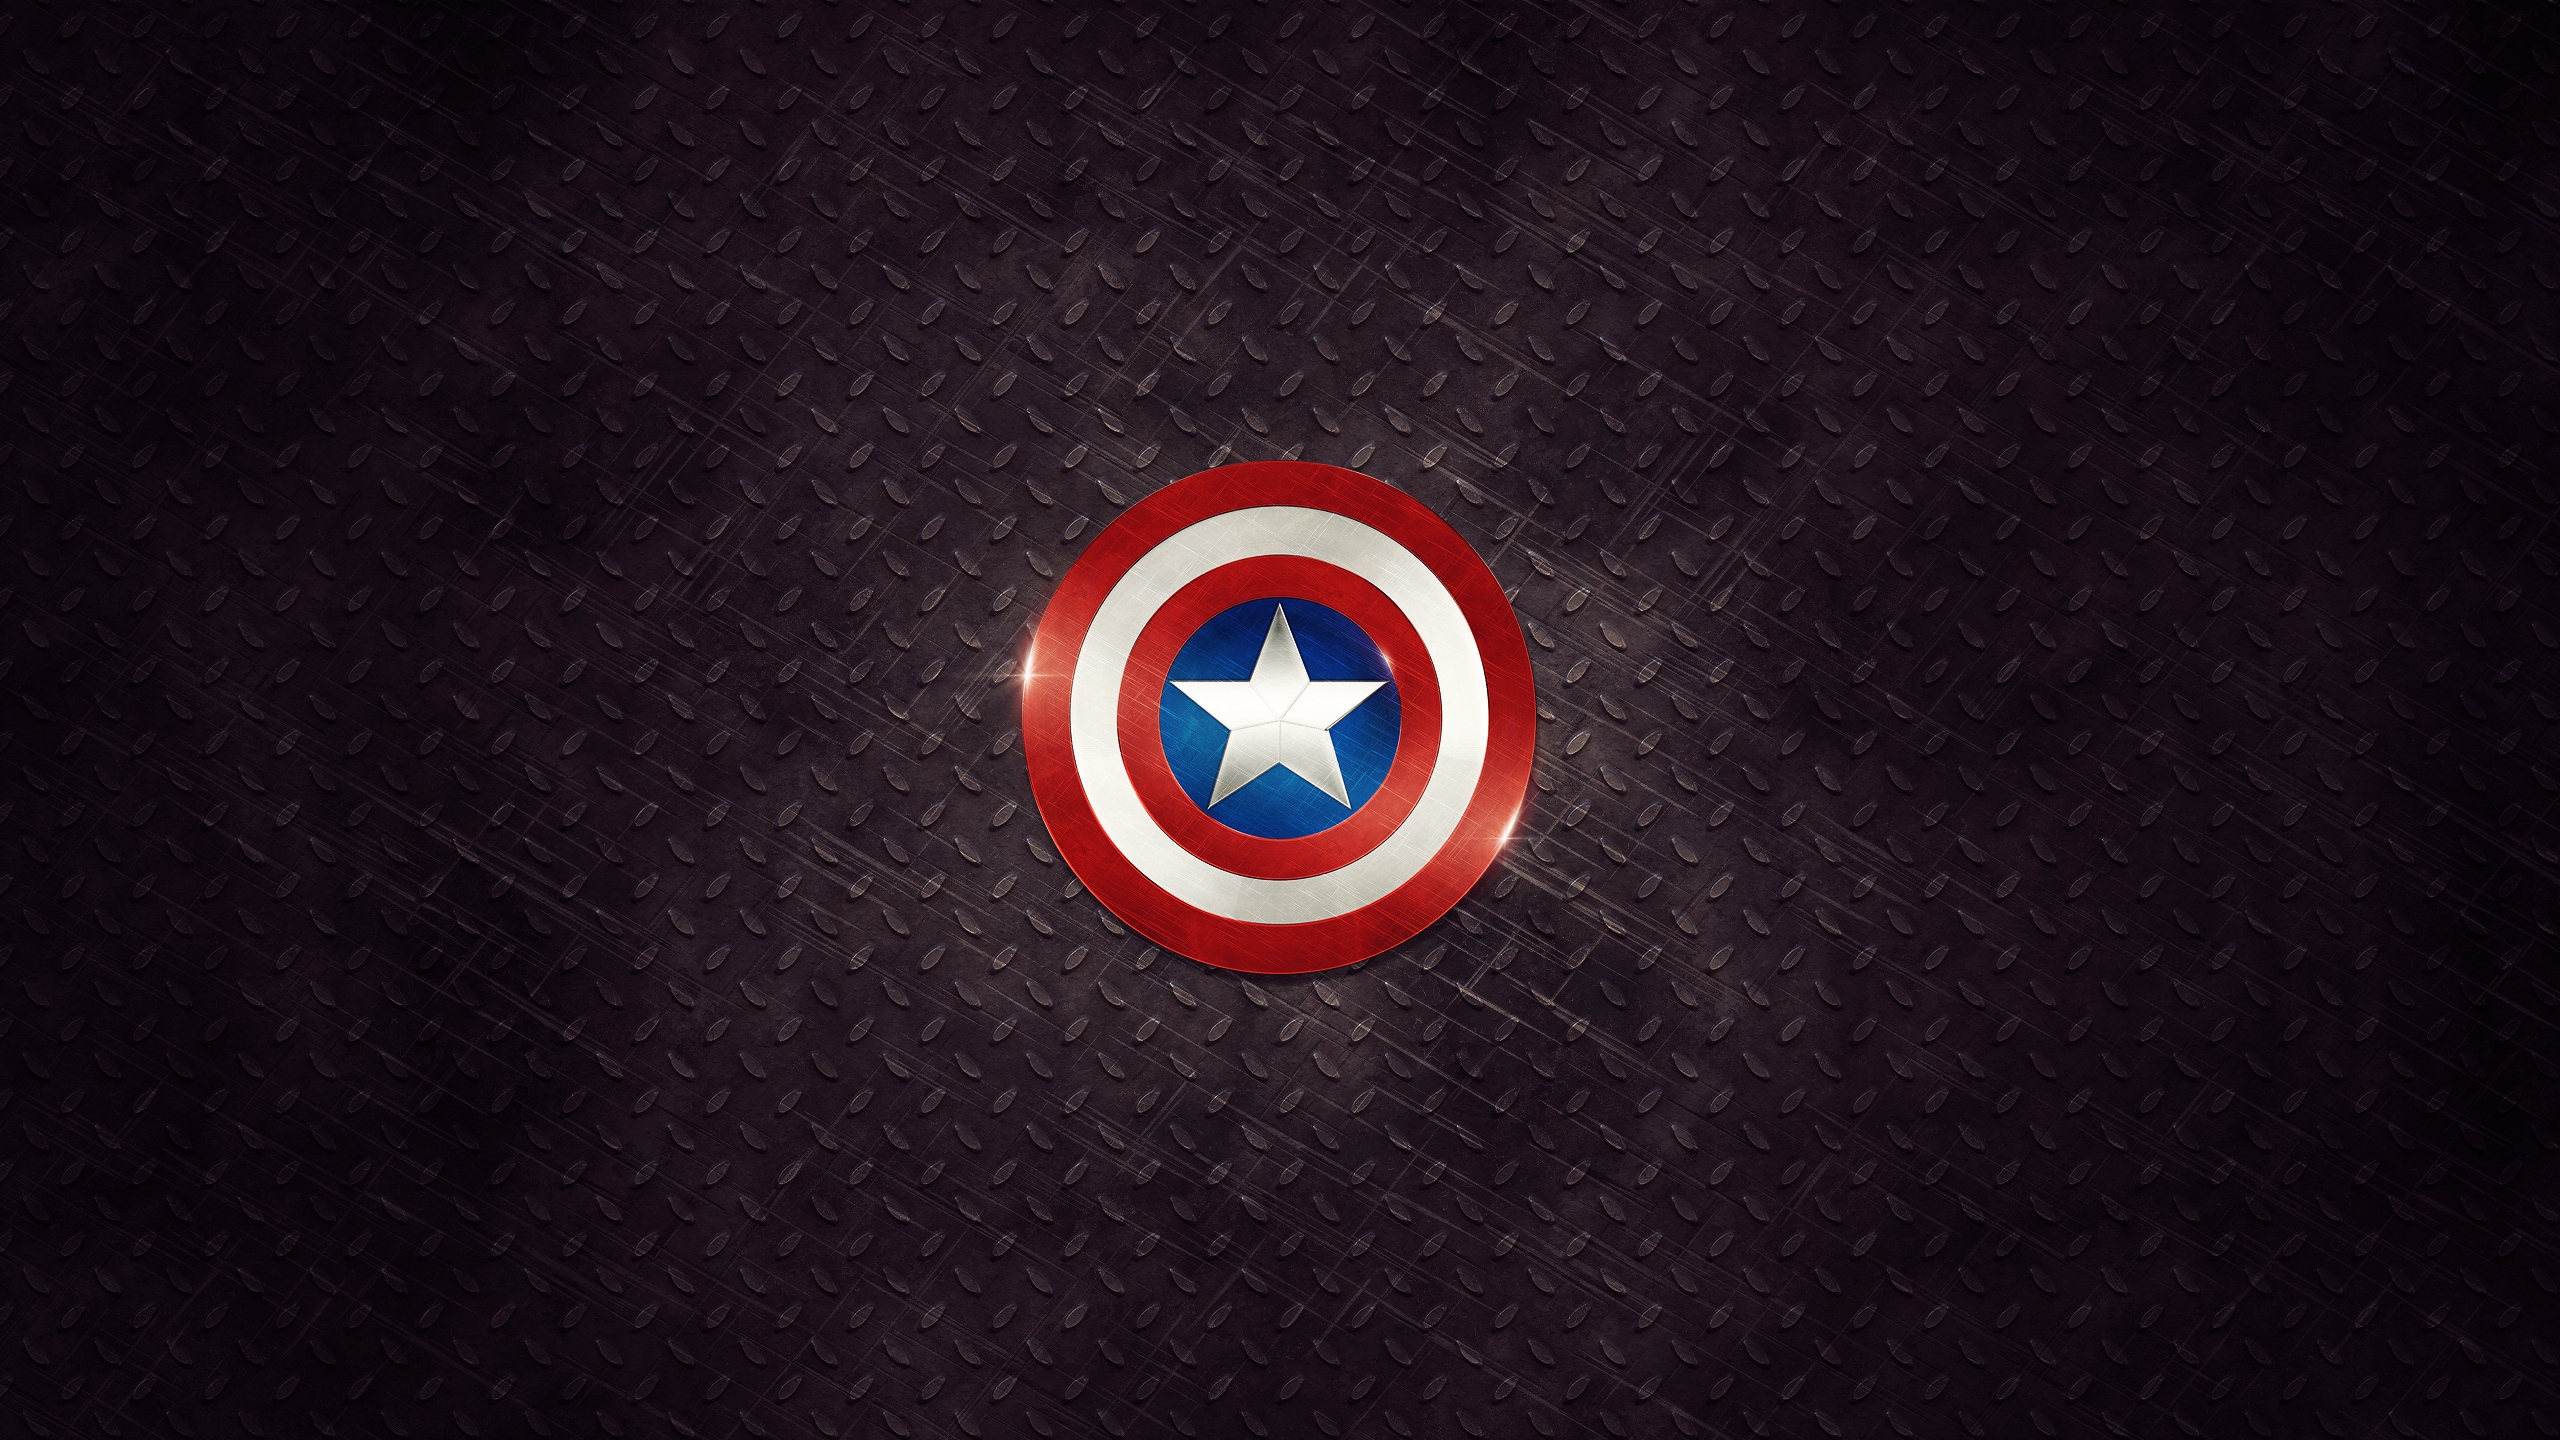 Captain America Logo for 2560x1440 HDTV resolution